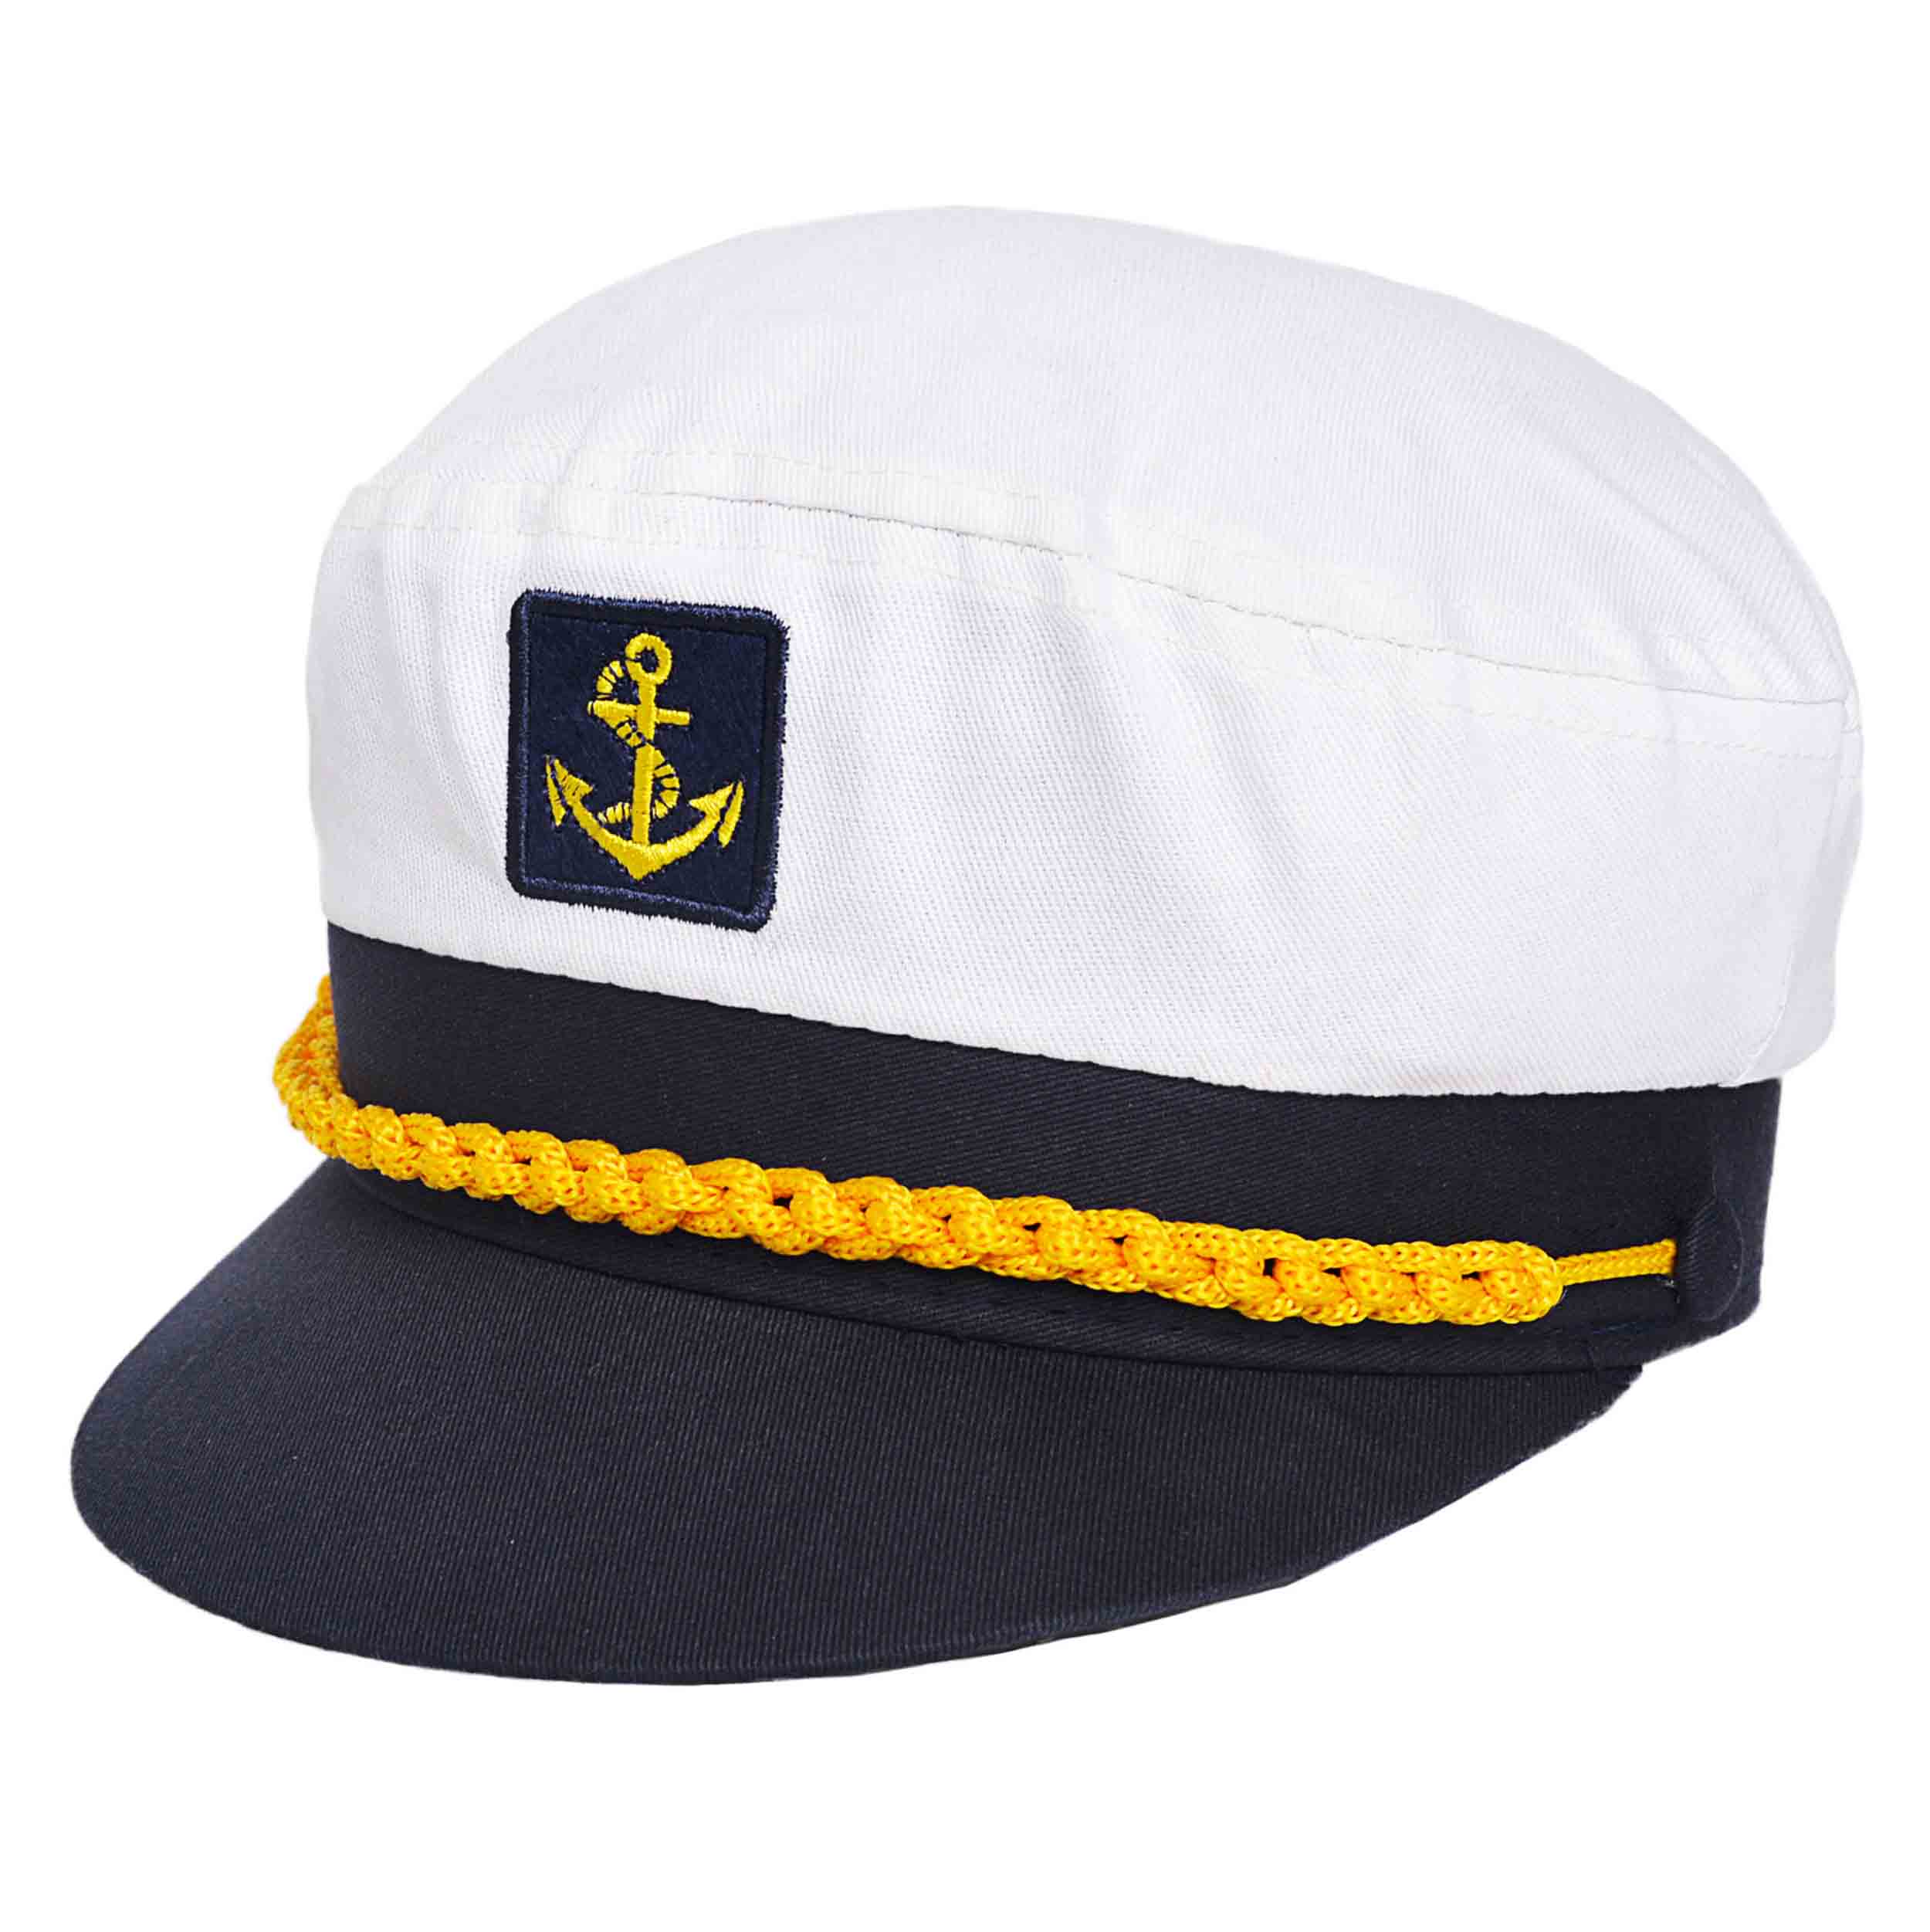 Gorra de capitán en tela de algodón.